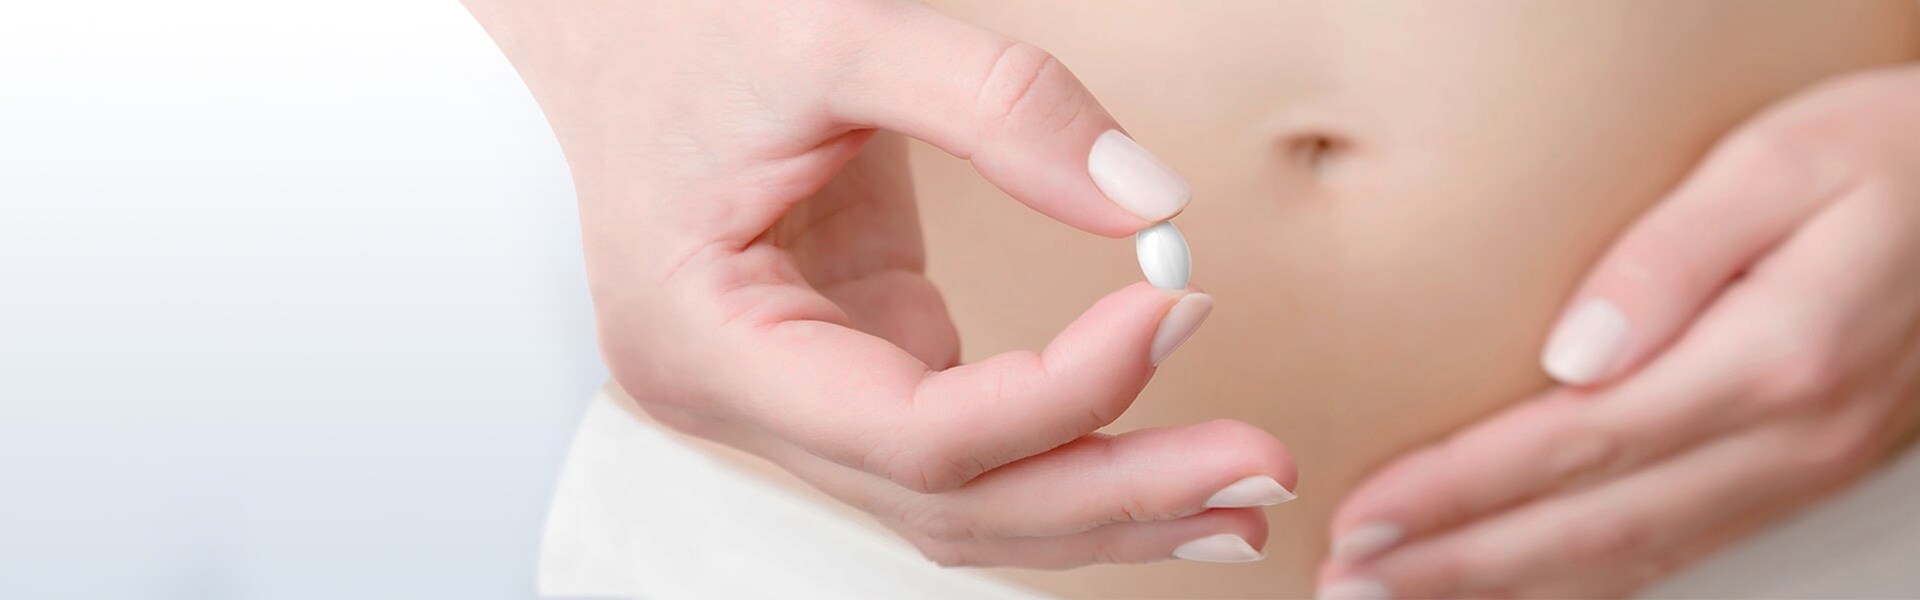 Mâna unei tinere ținând o pilulă